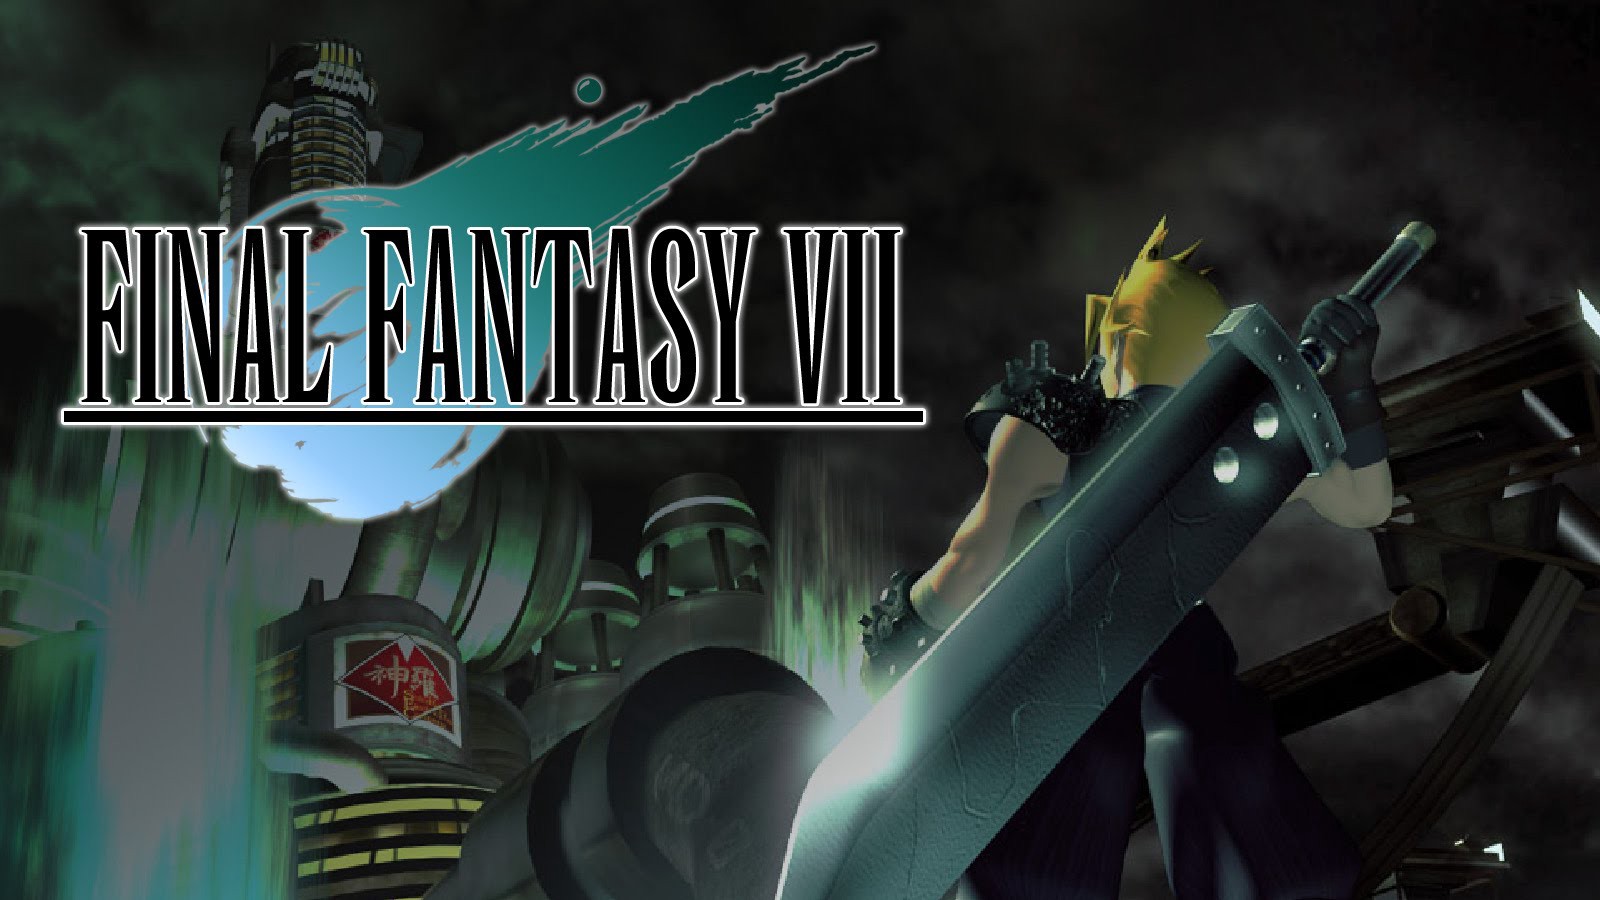 Final Fantasy VII -Salon de la fama de videojuegos-GamersRd